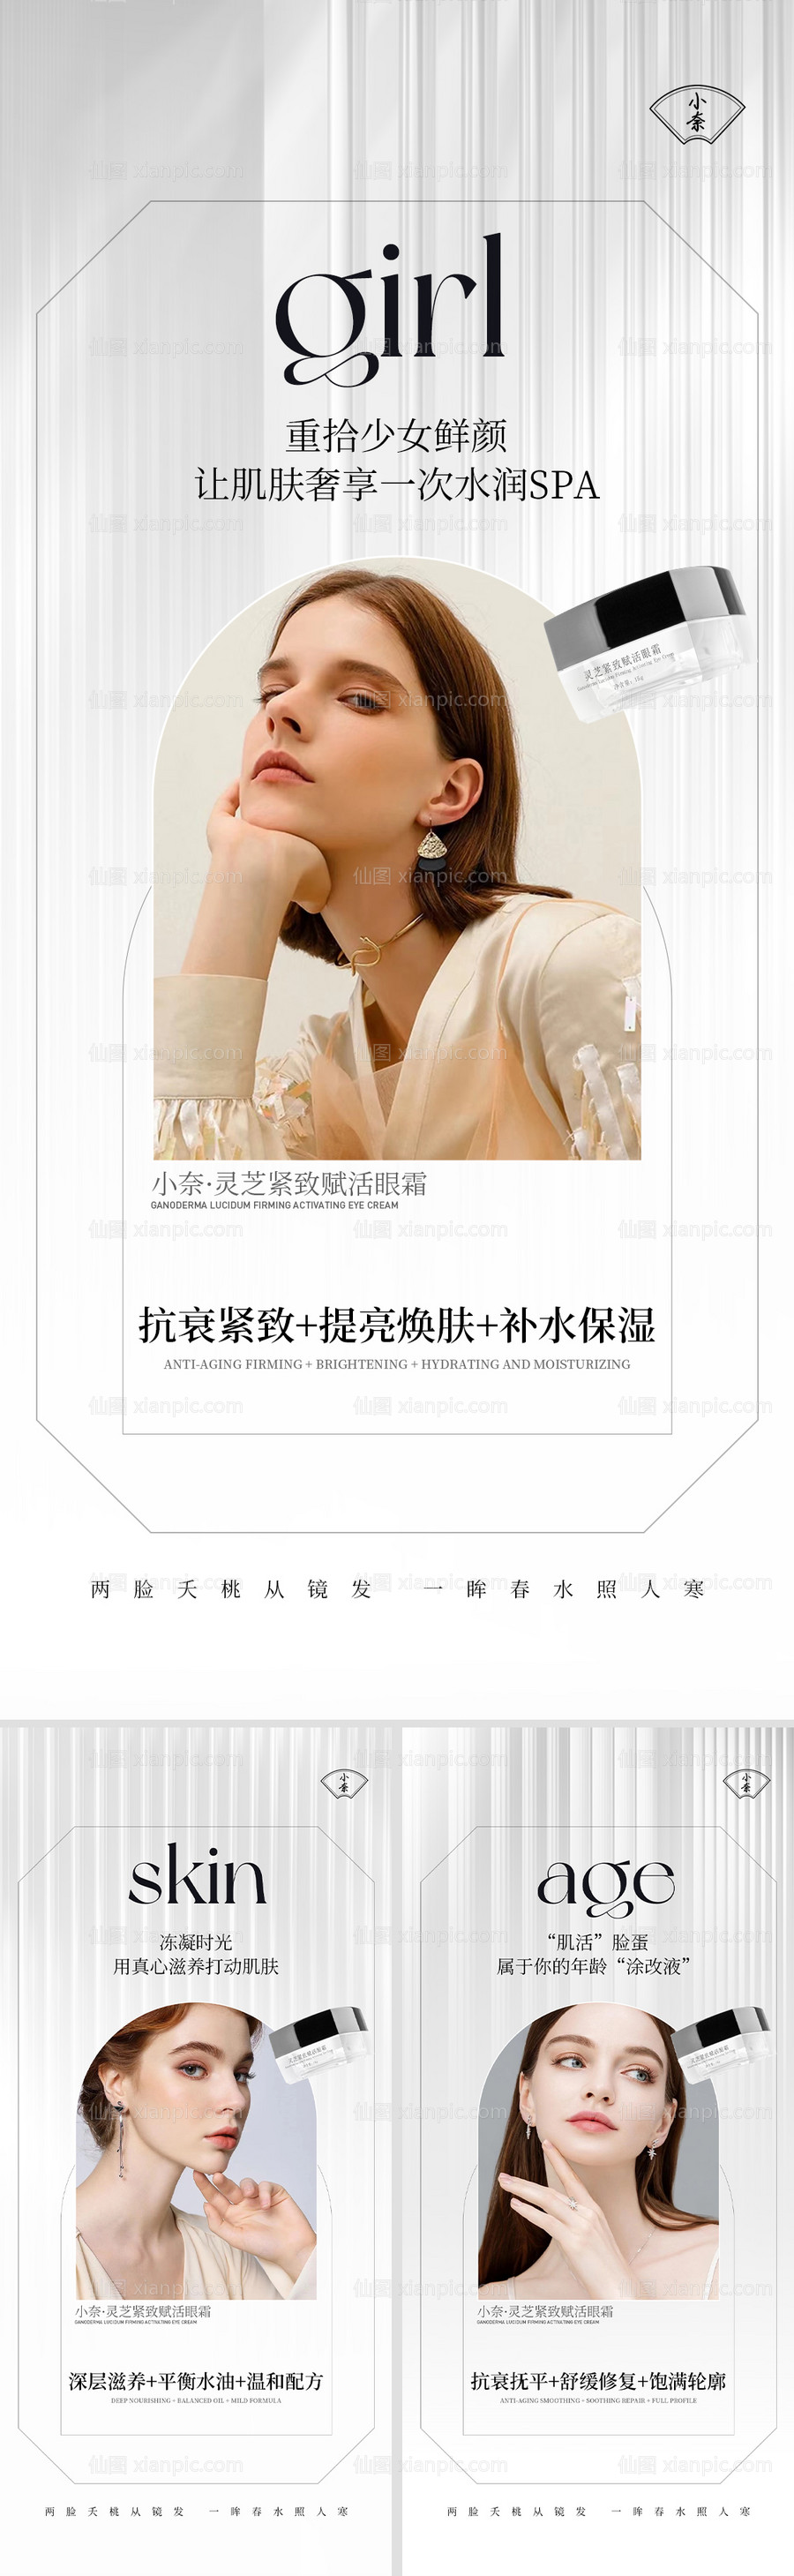 素材乐-美妆系列产品海报 